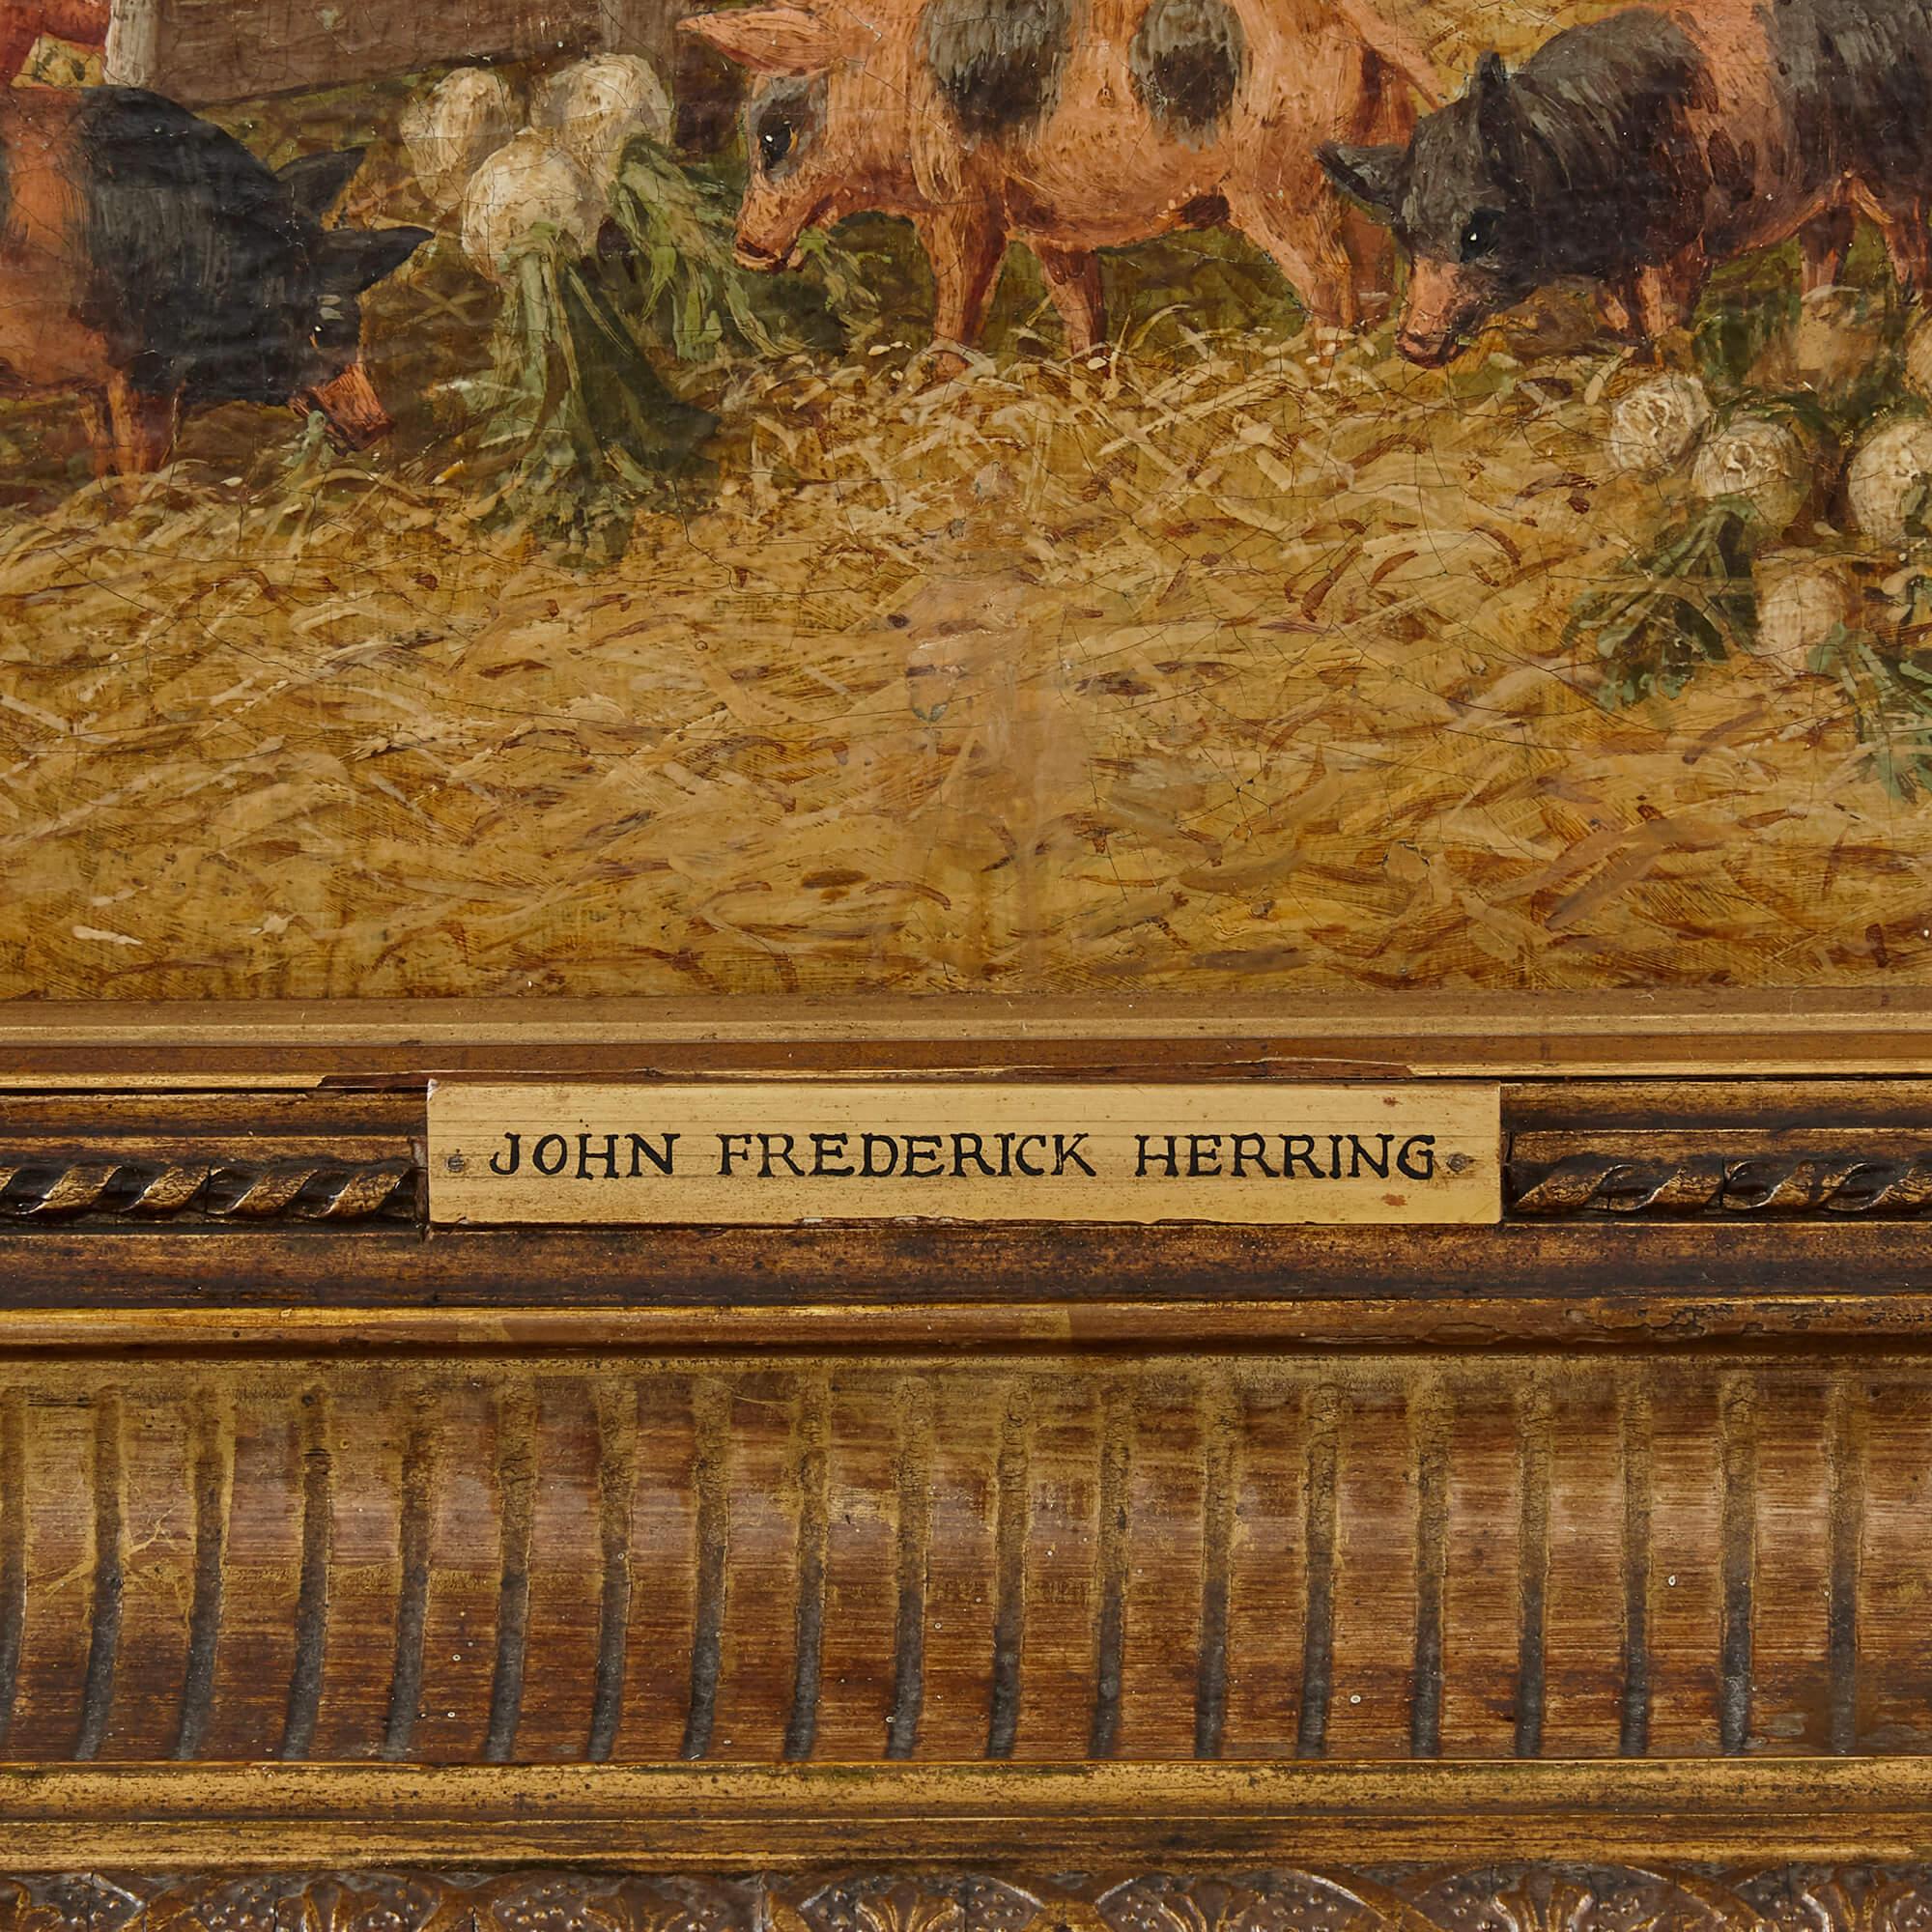 Gemälde von Pferden und Nutztieren von Hering dem Jüngeren
Britisch, 19. Jahrhundert
Rahmen: Höhe 83cm, Breite 97cm
Leinwand: Höhe 64cm, Breite 77cm

Dieses bezaubernde Gemälde stammt von John Frederick Herring dem Jüngeren, dem Sohn von John